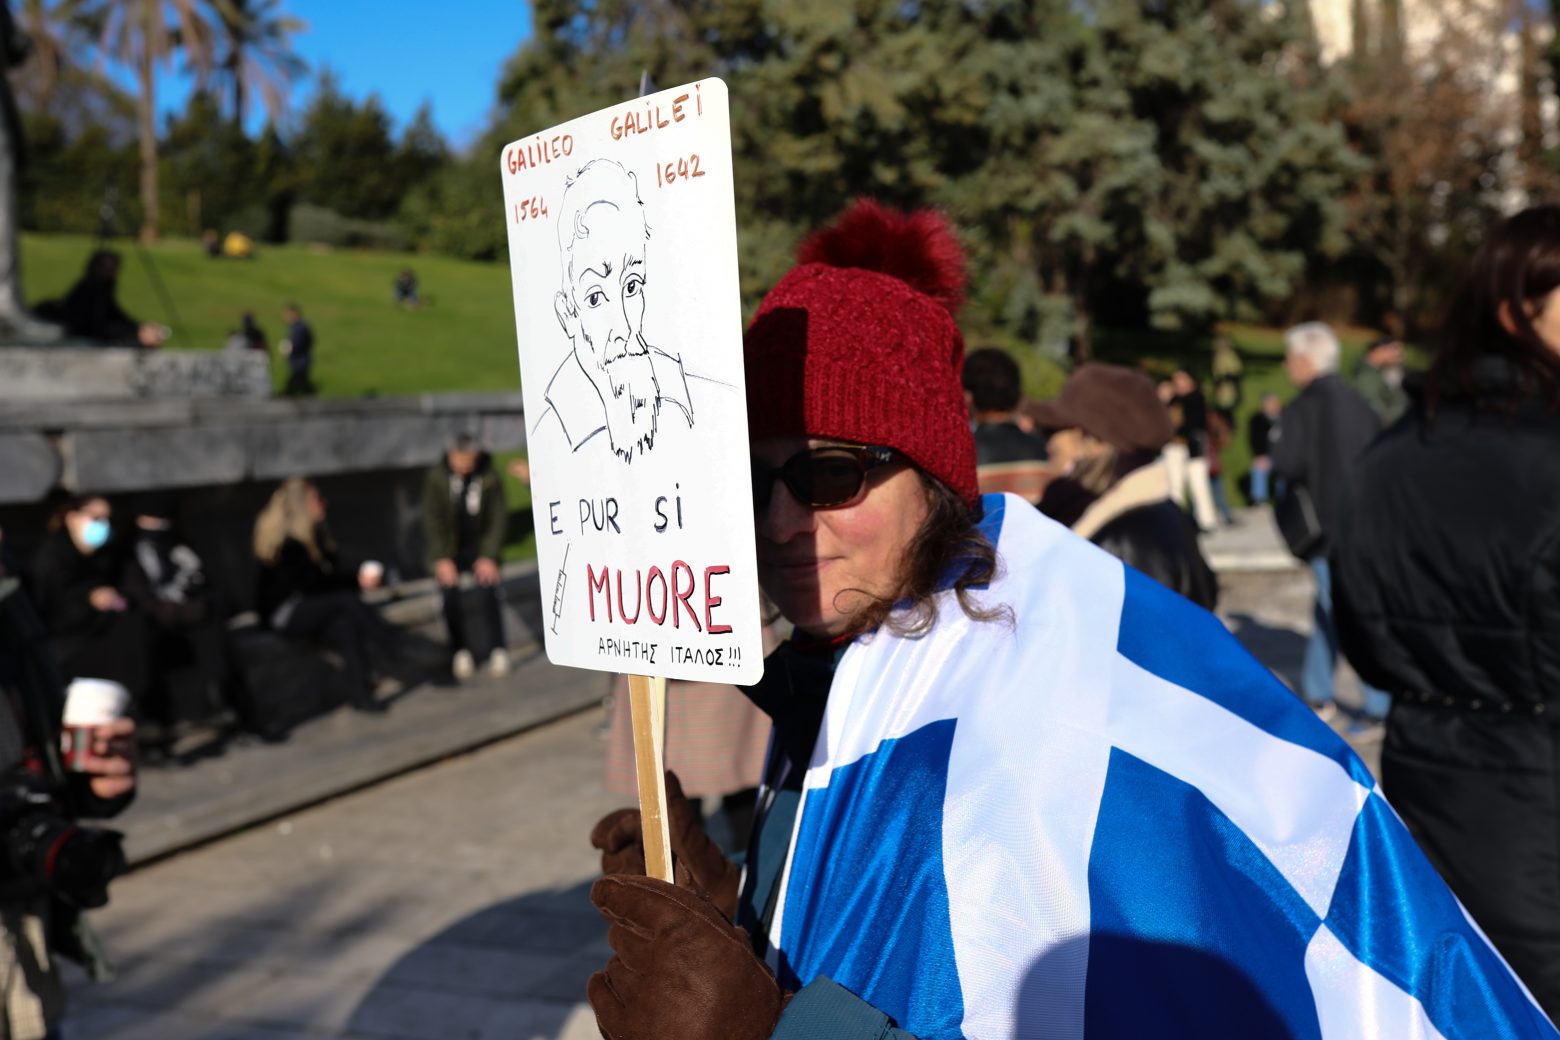 Έχουν ξεφύγει εντελώς οι «Αυτόχθονες Έλληνες» - Ζητούν αποζημίωση 2 τρις ευρώ από την Περιφέρεια Δυτικής Ελλάδας